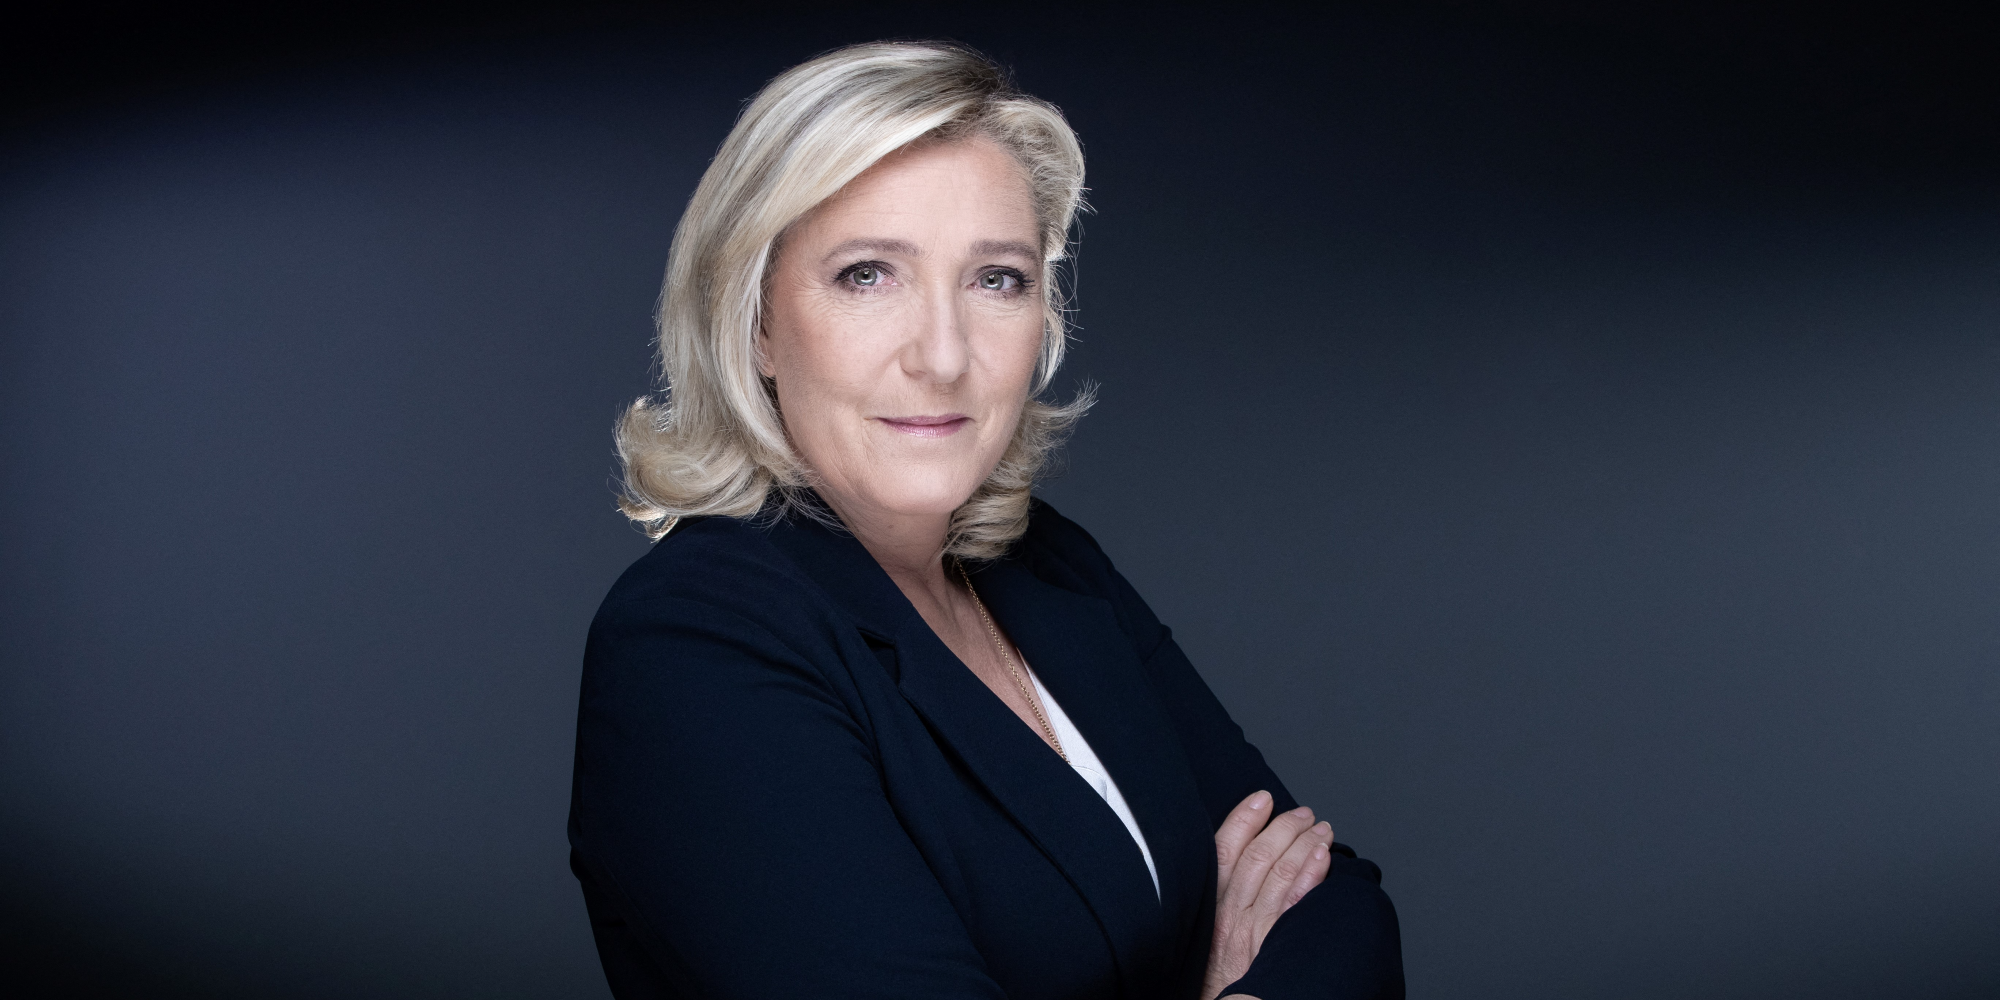 Marine Le Pen, Emmanuel Macron